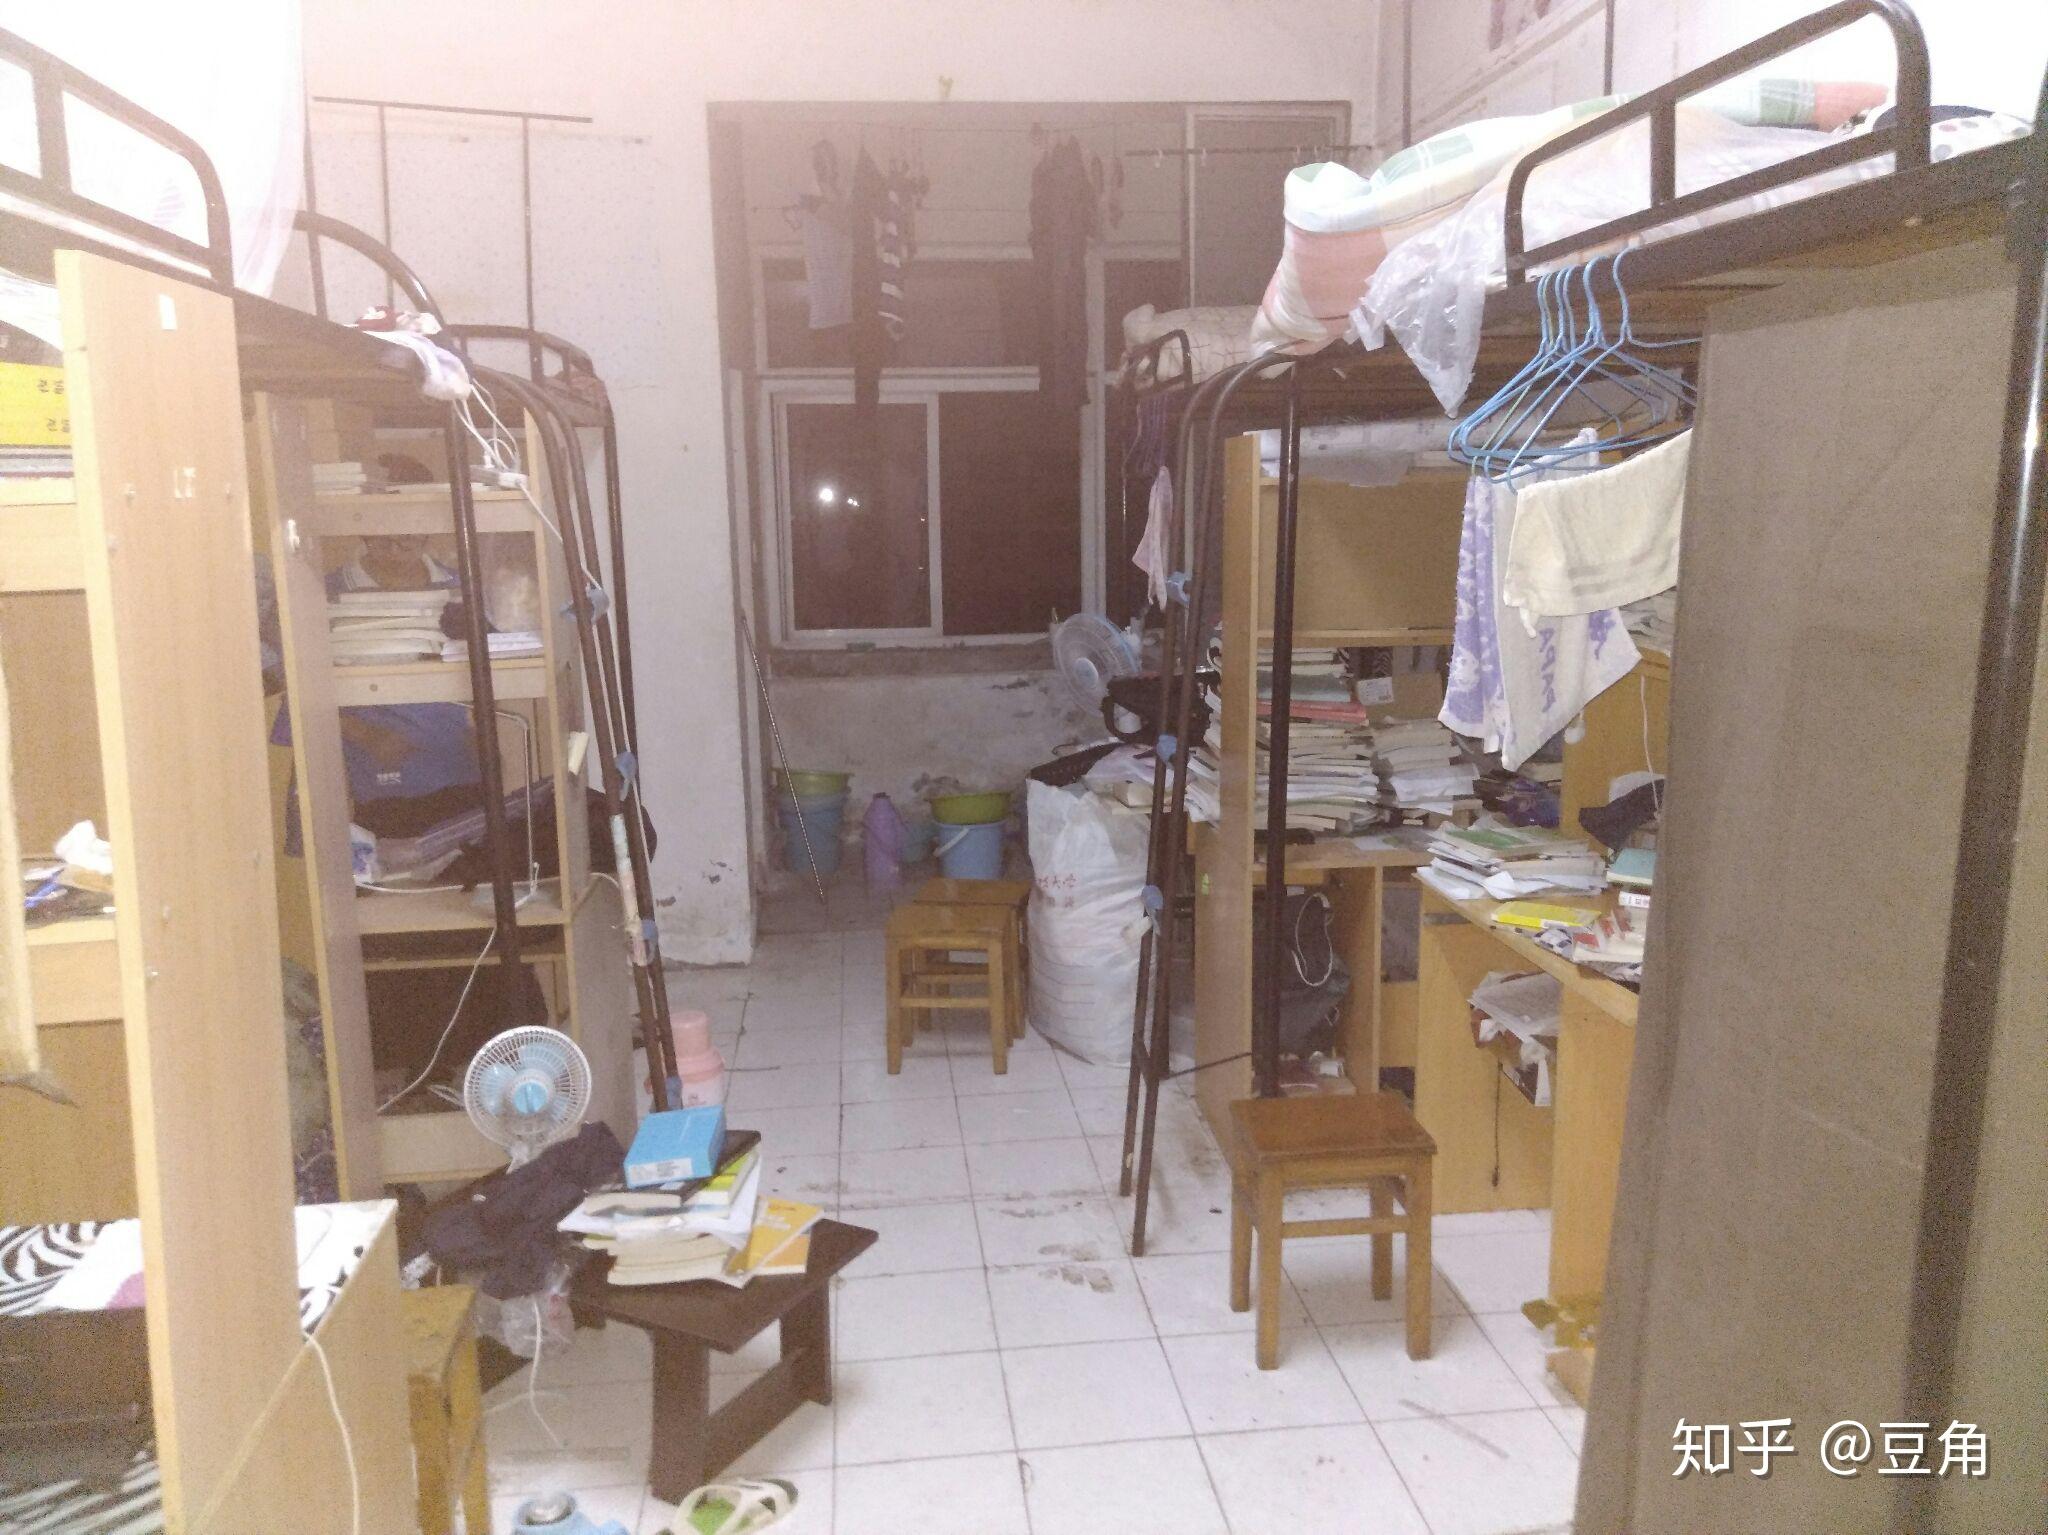 武汉纺织大学阳光校区宿舍和食堂条件怎么样？（求照片）？